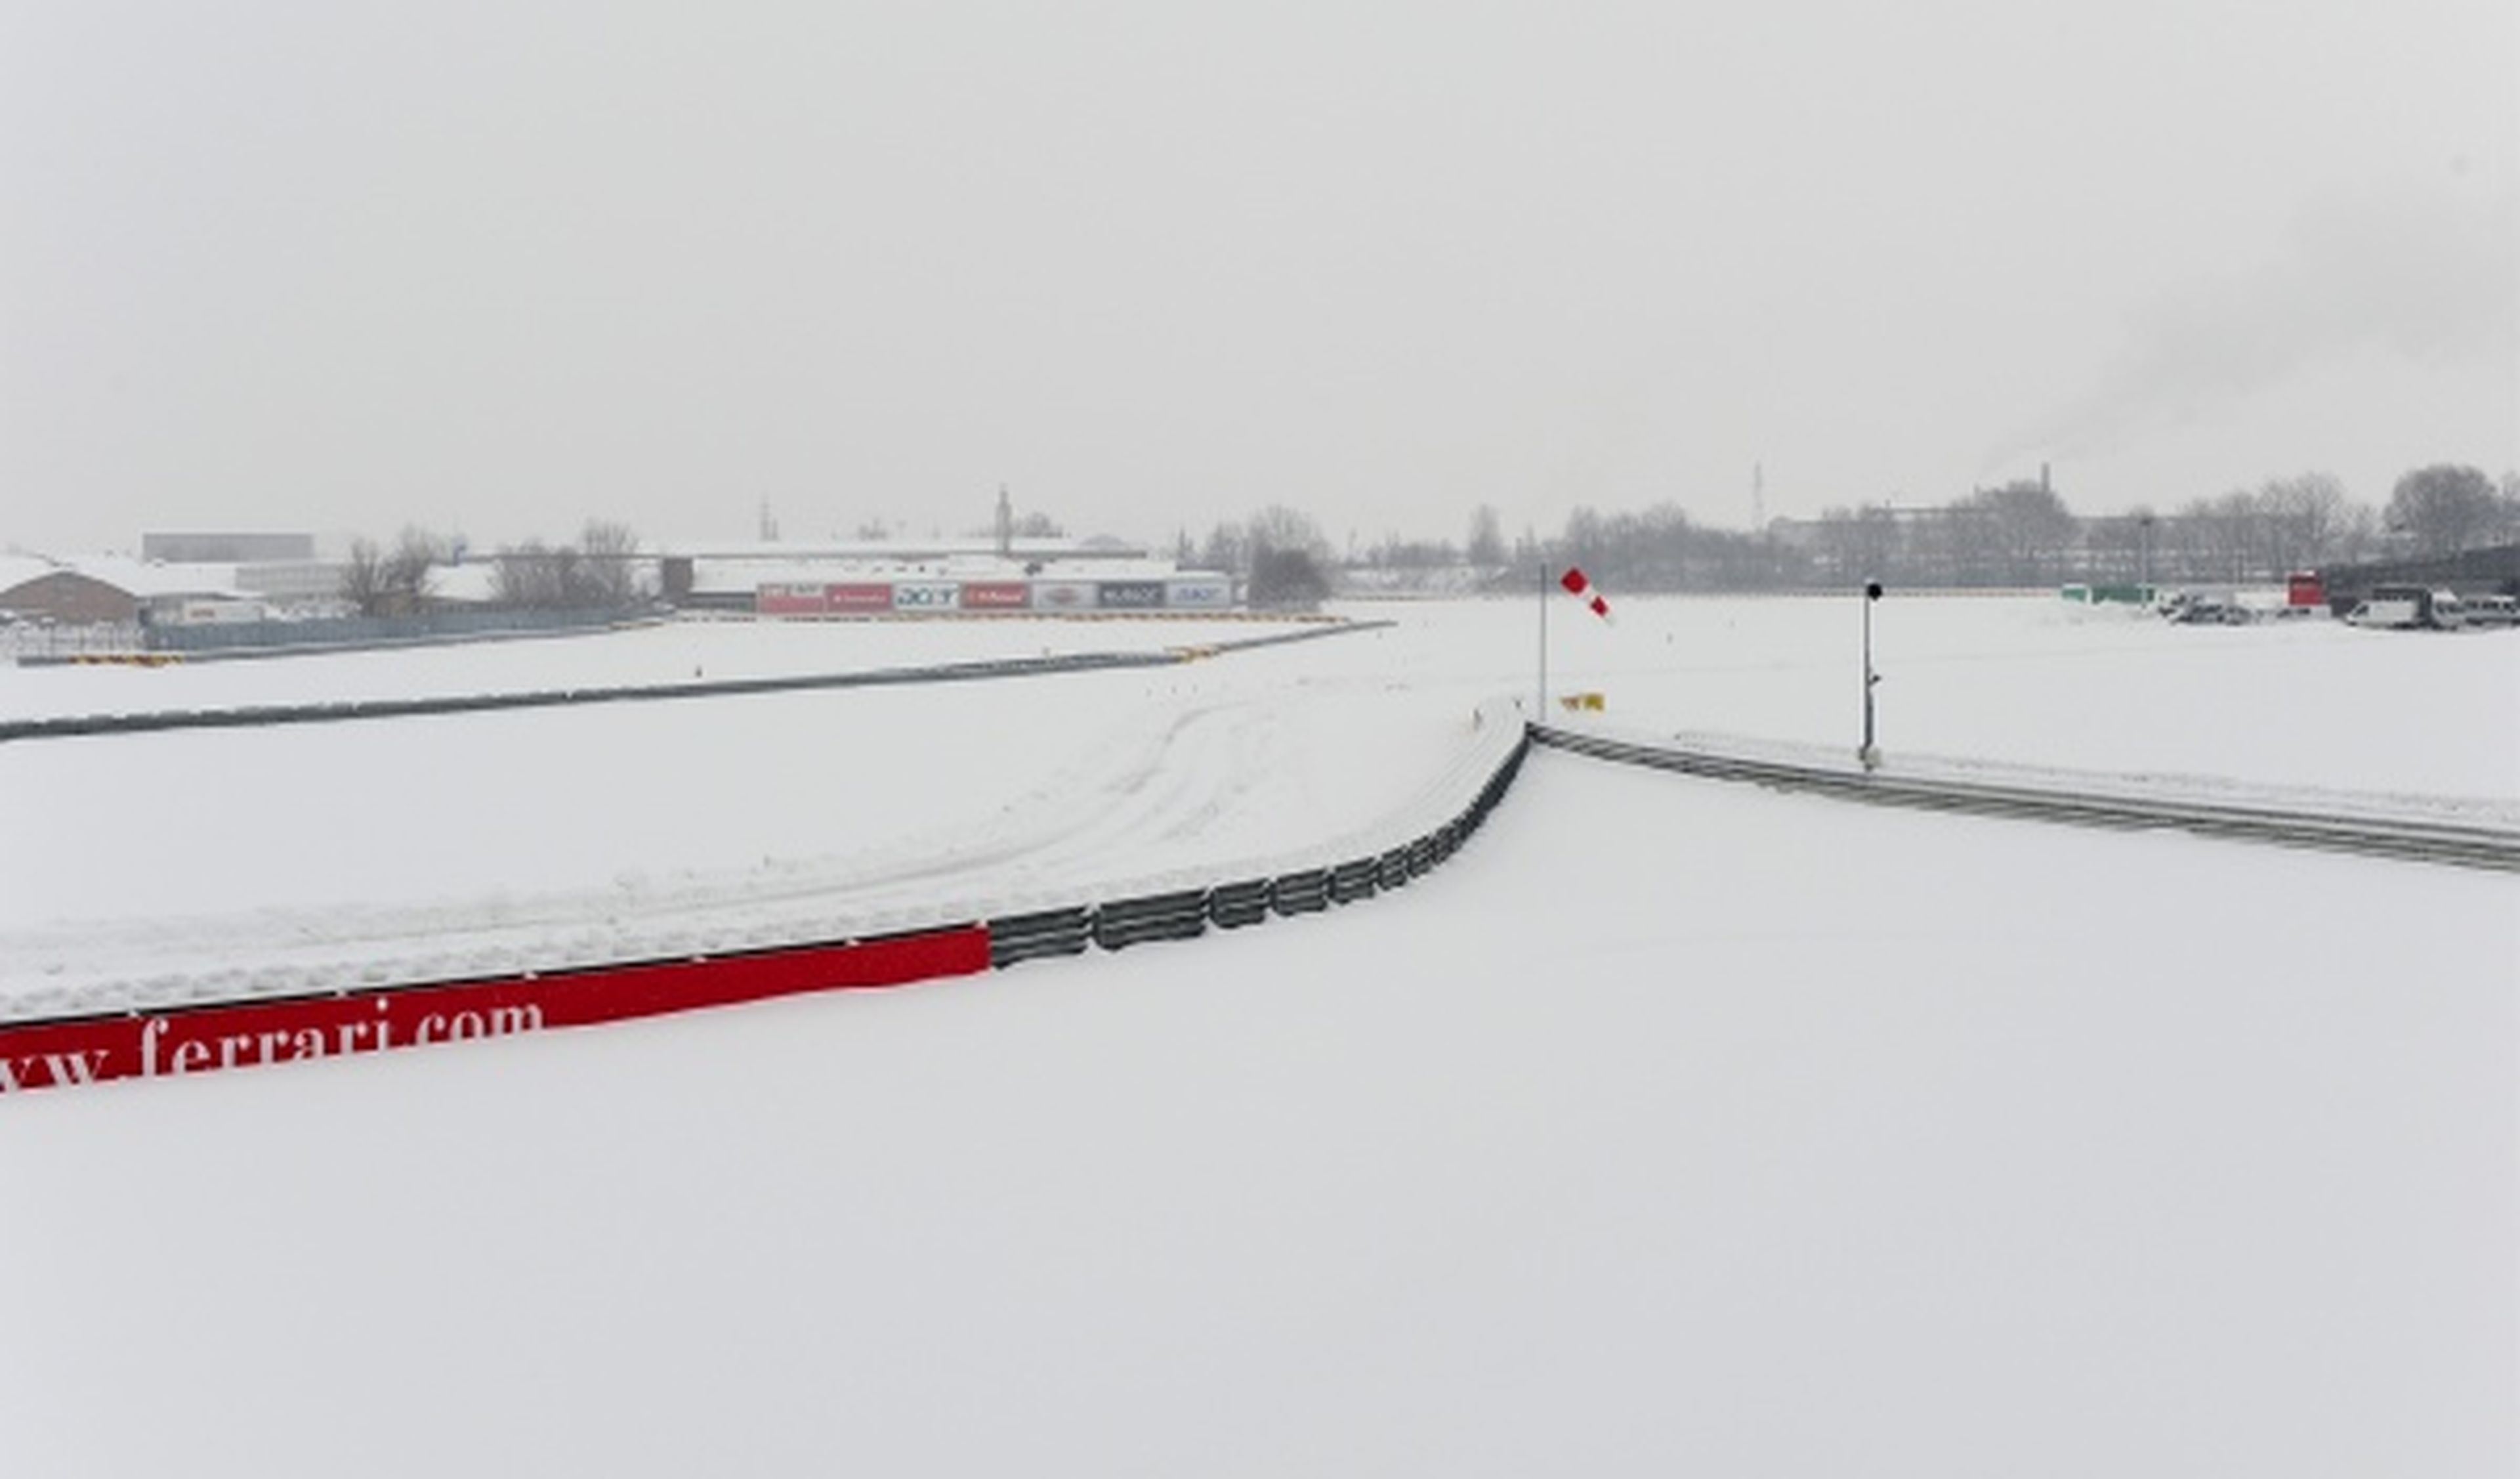 Ferrari anula la presentación de su monoplaza por la nieve